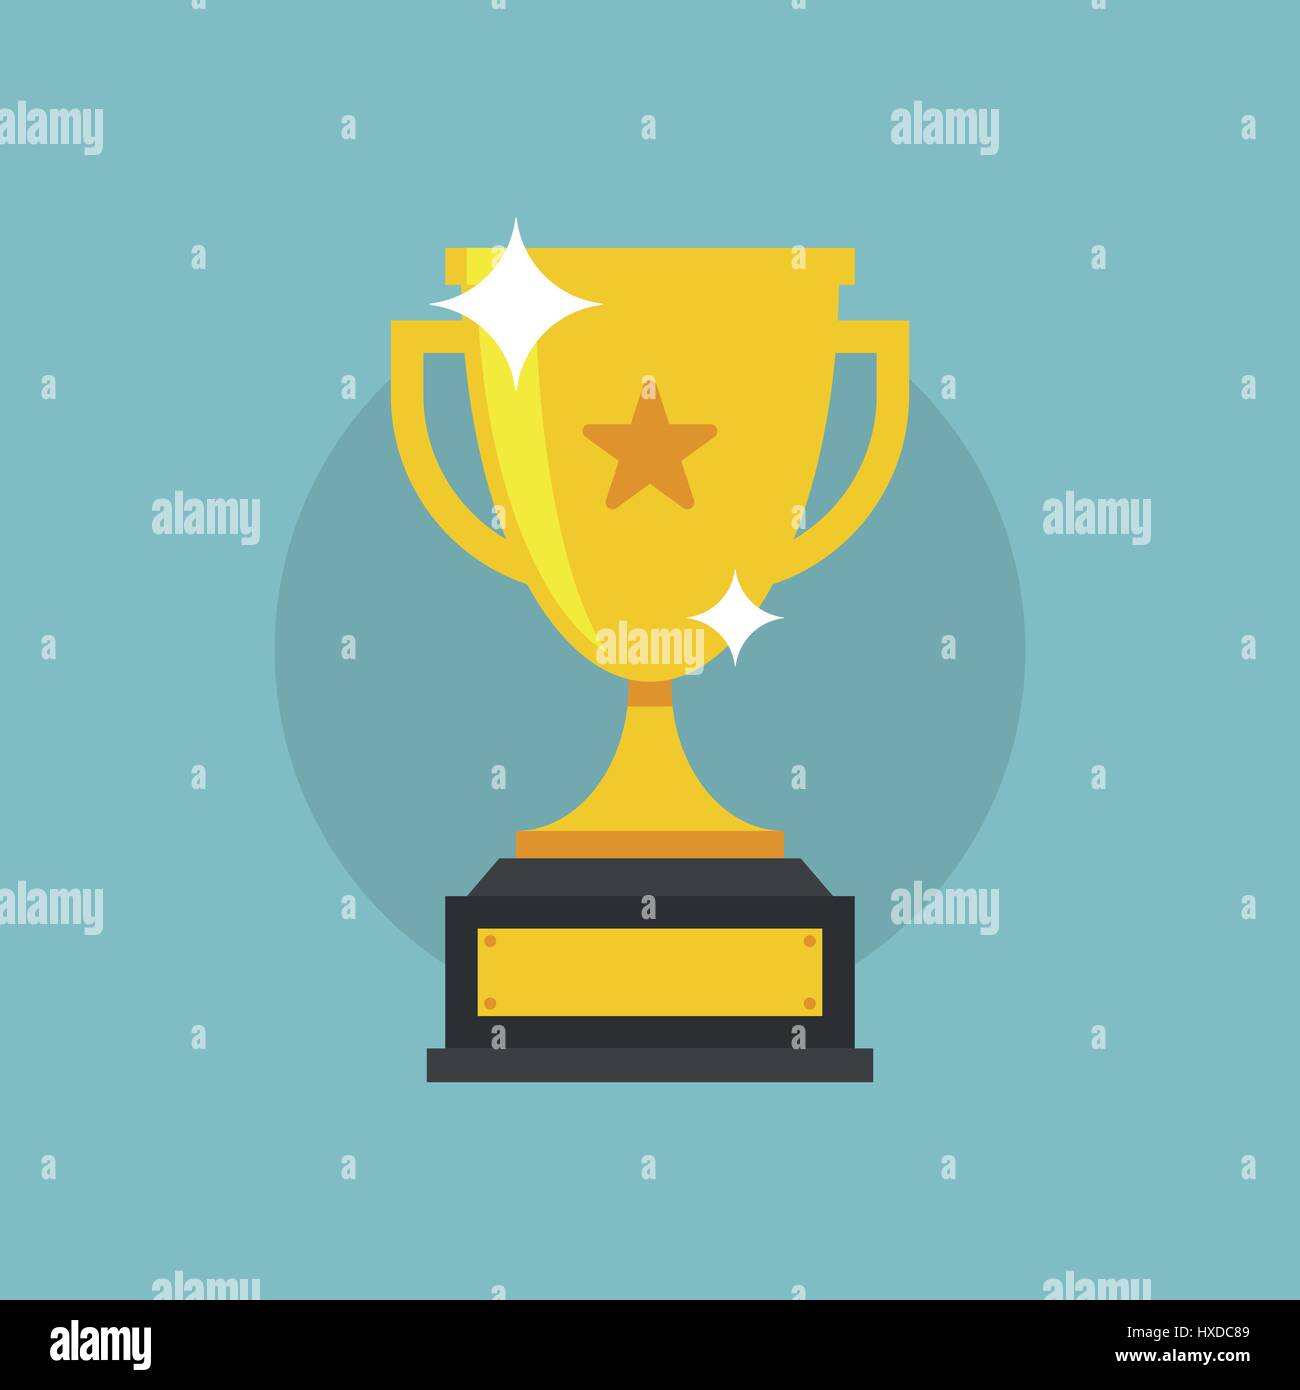 Trophy Cup Vektor flache Icon mit Stern auf Cyan Hintergrund, Stock Vektor